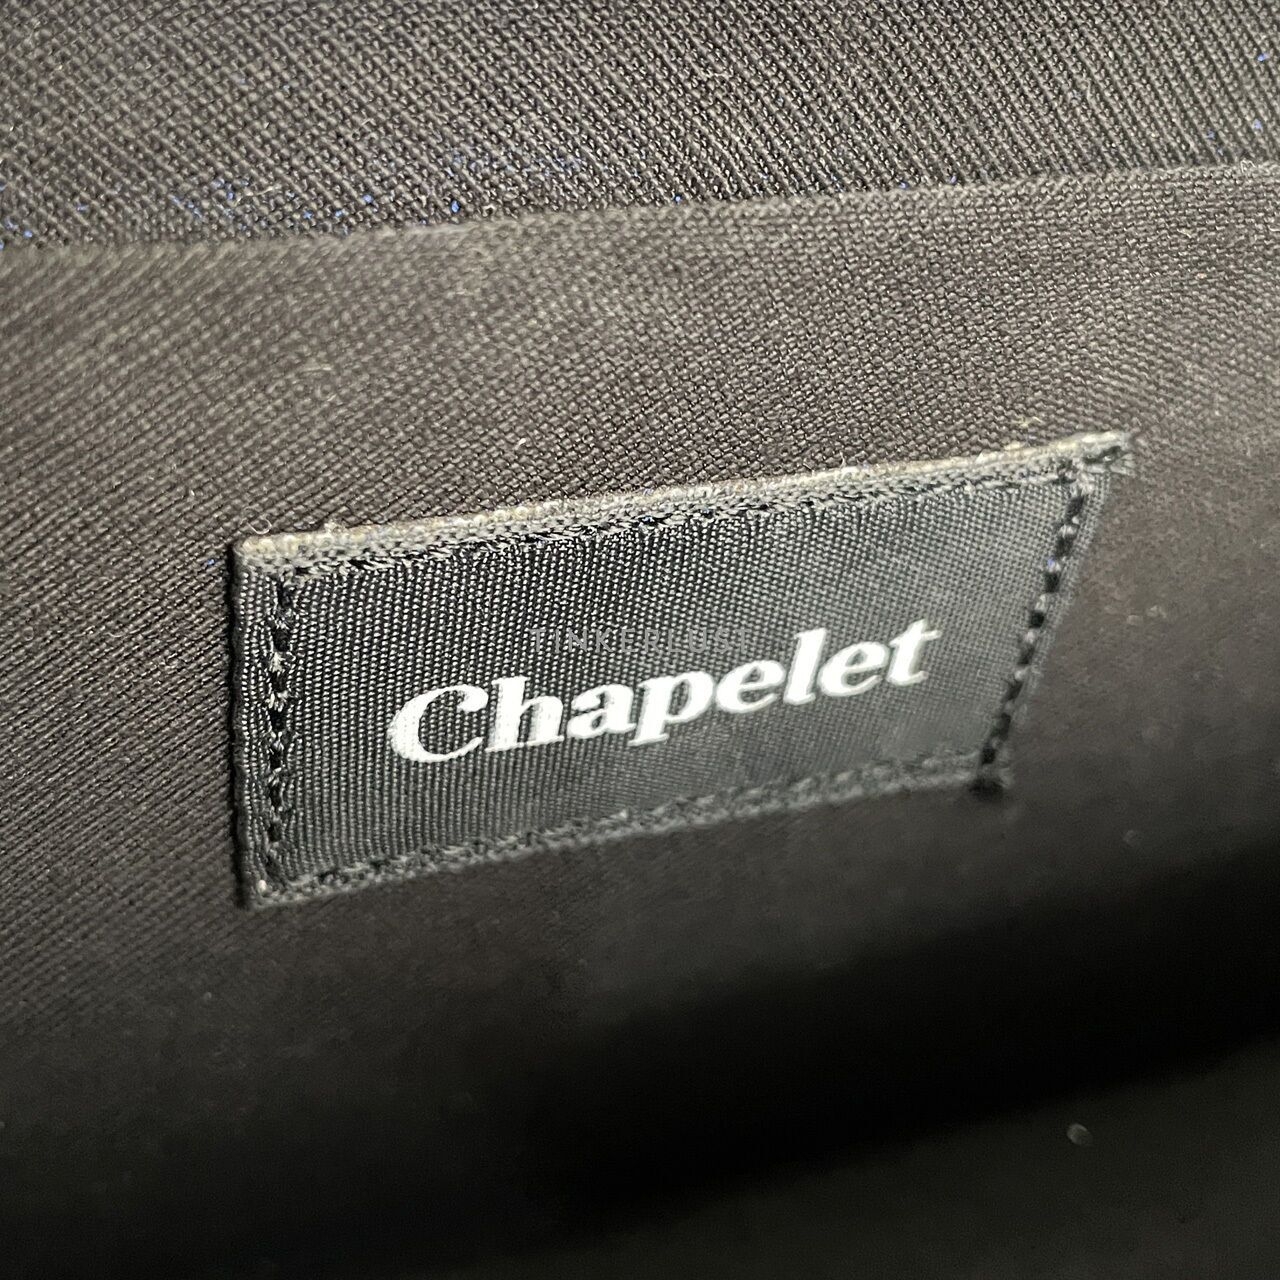 Chapelet Black Shoulder Bag